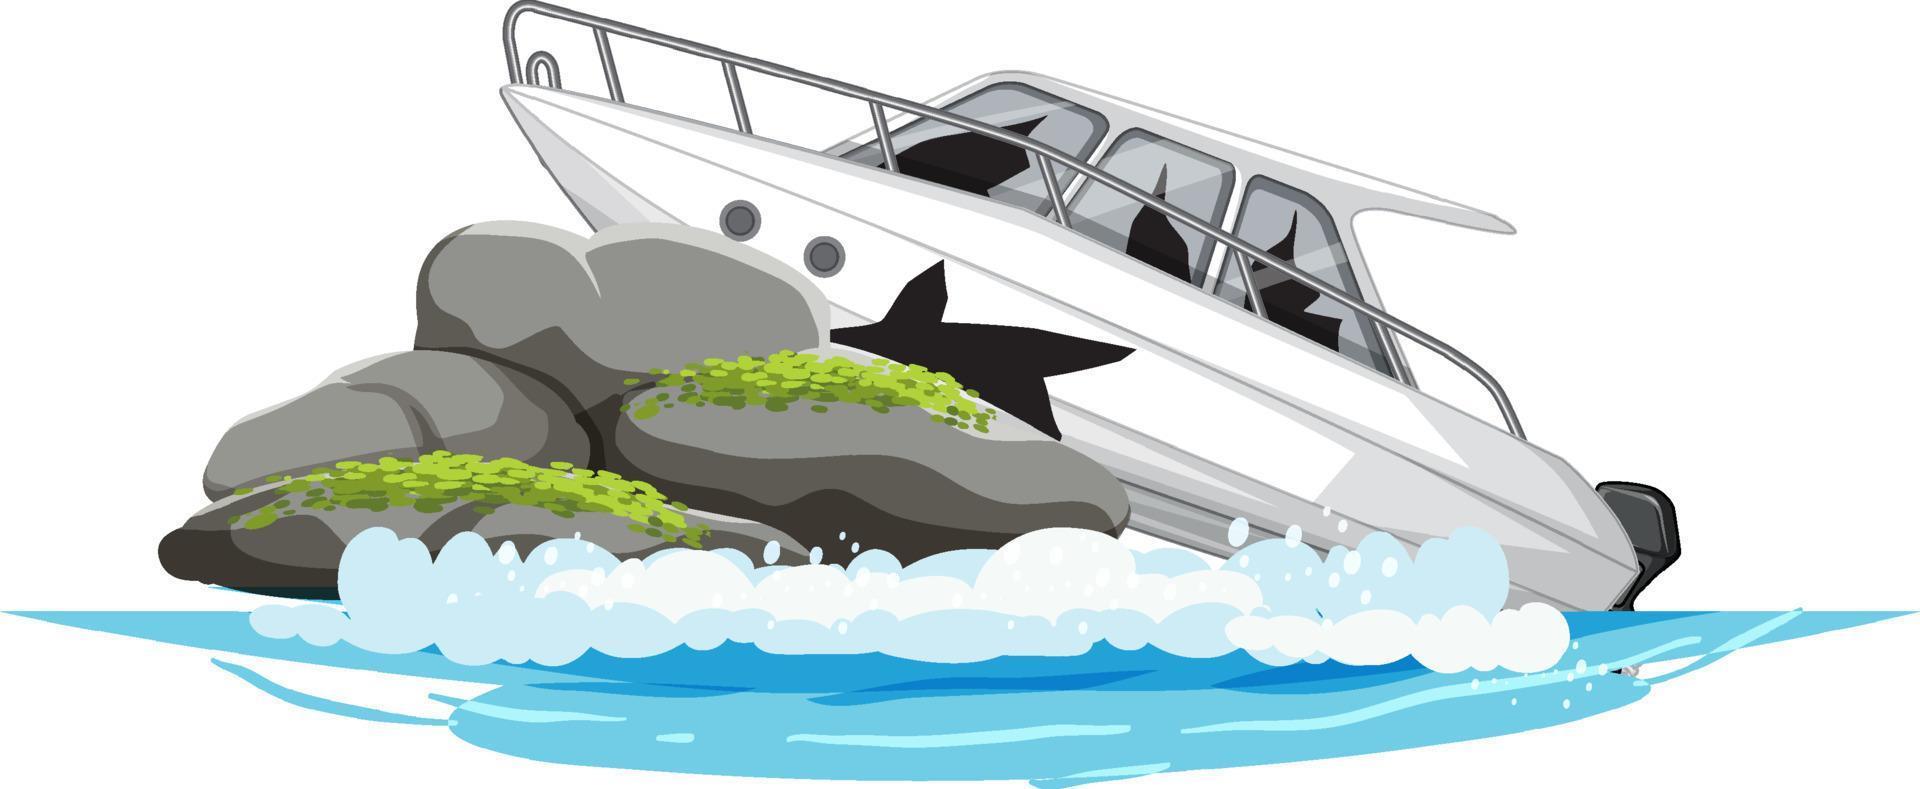 Speedboat crashing the rock in the ocean vector